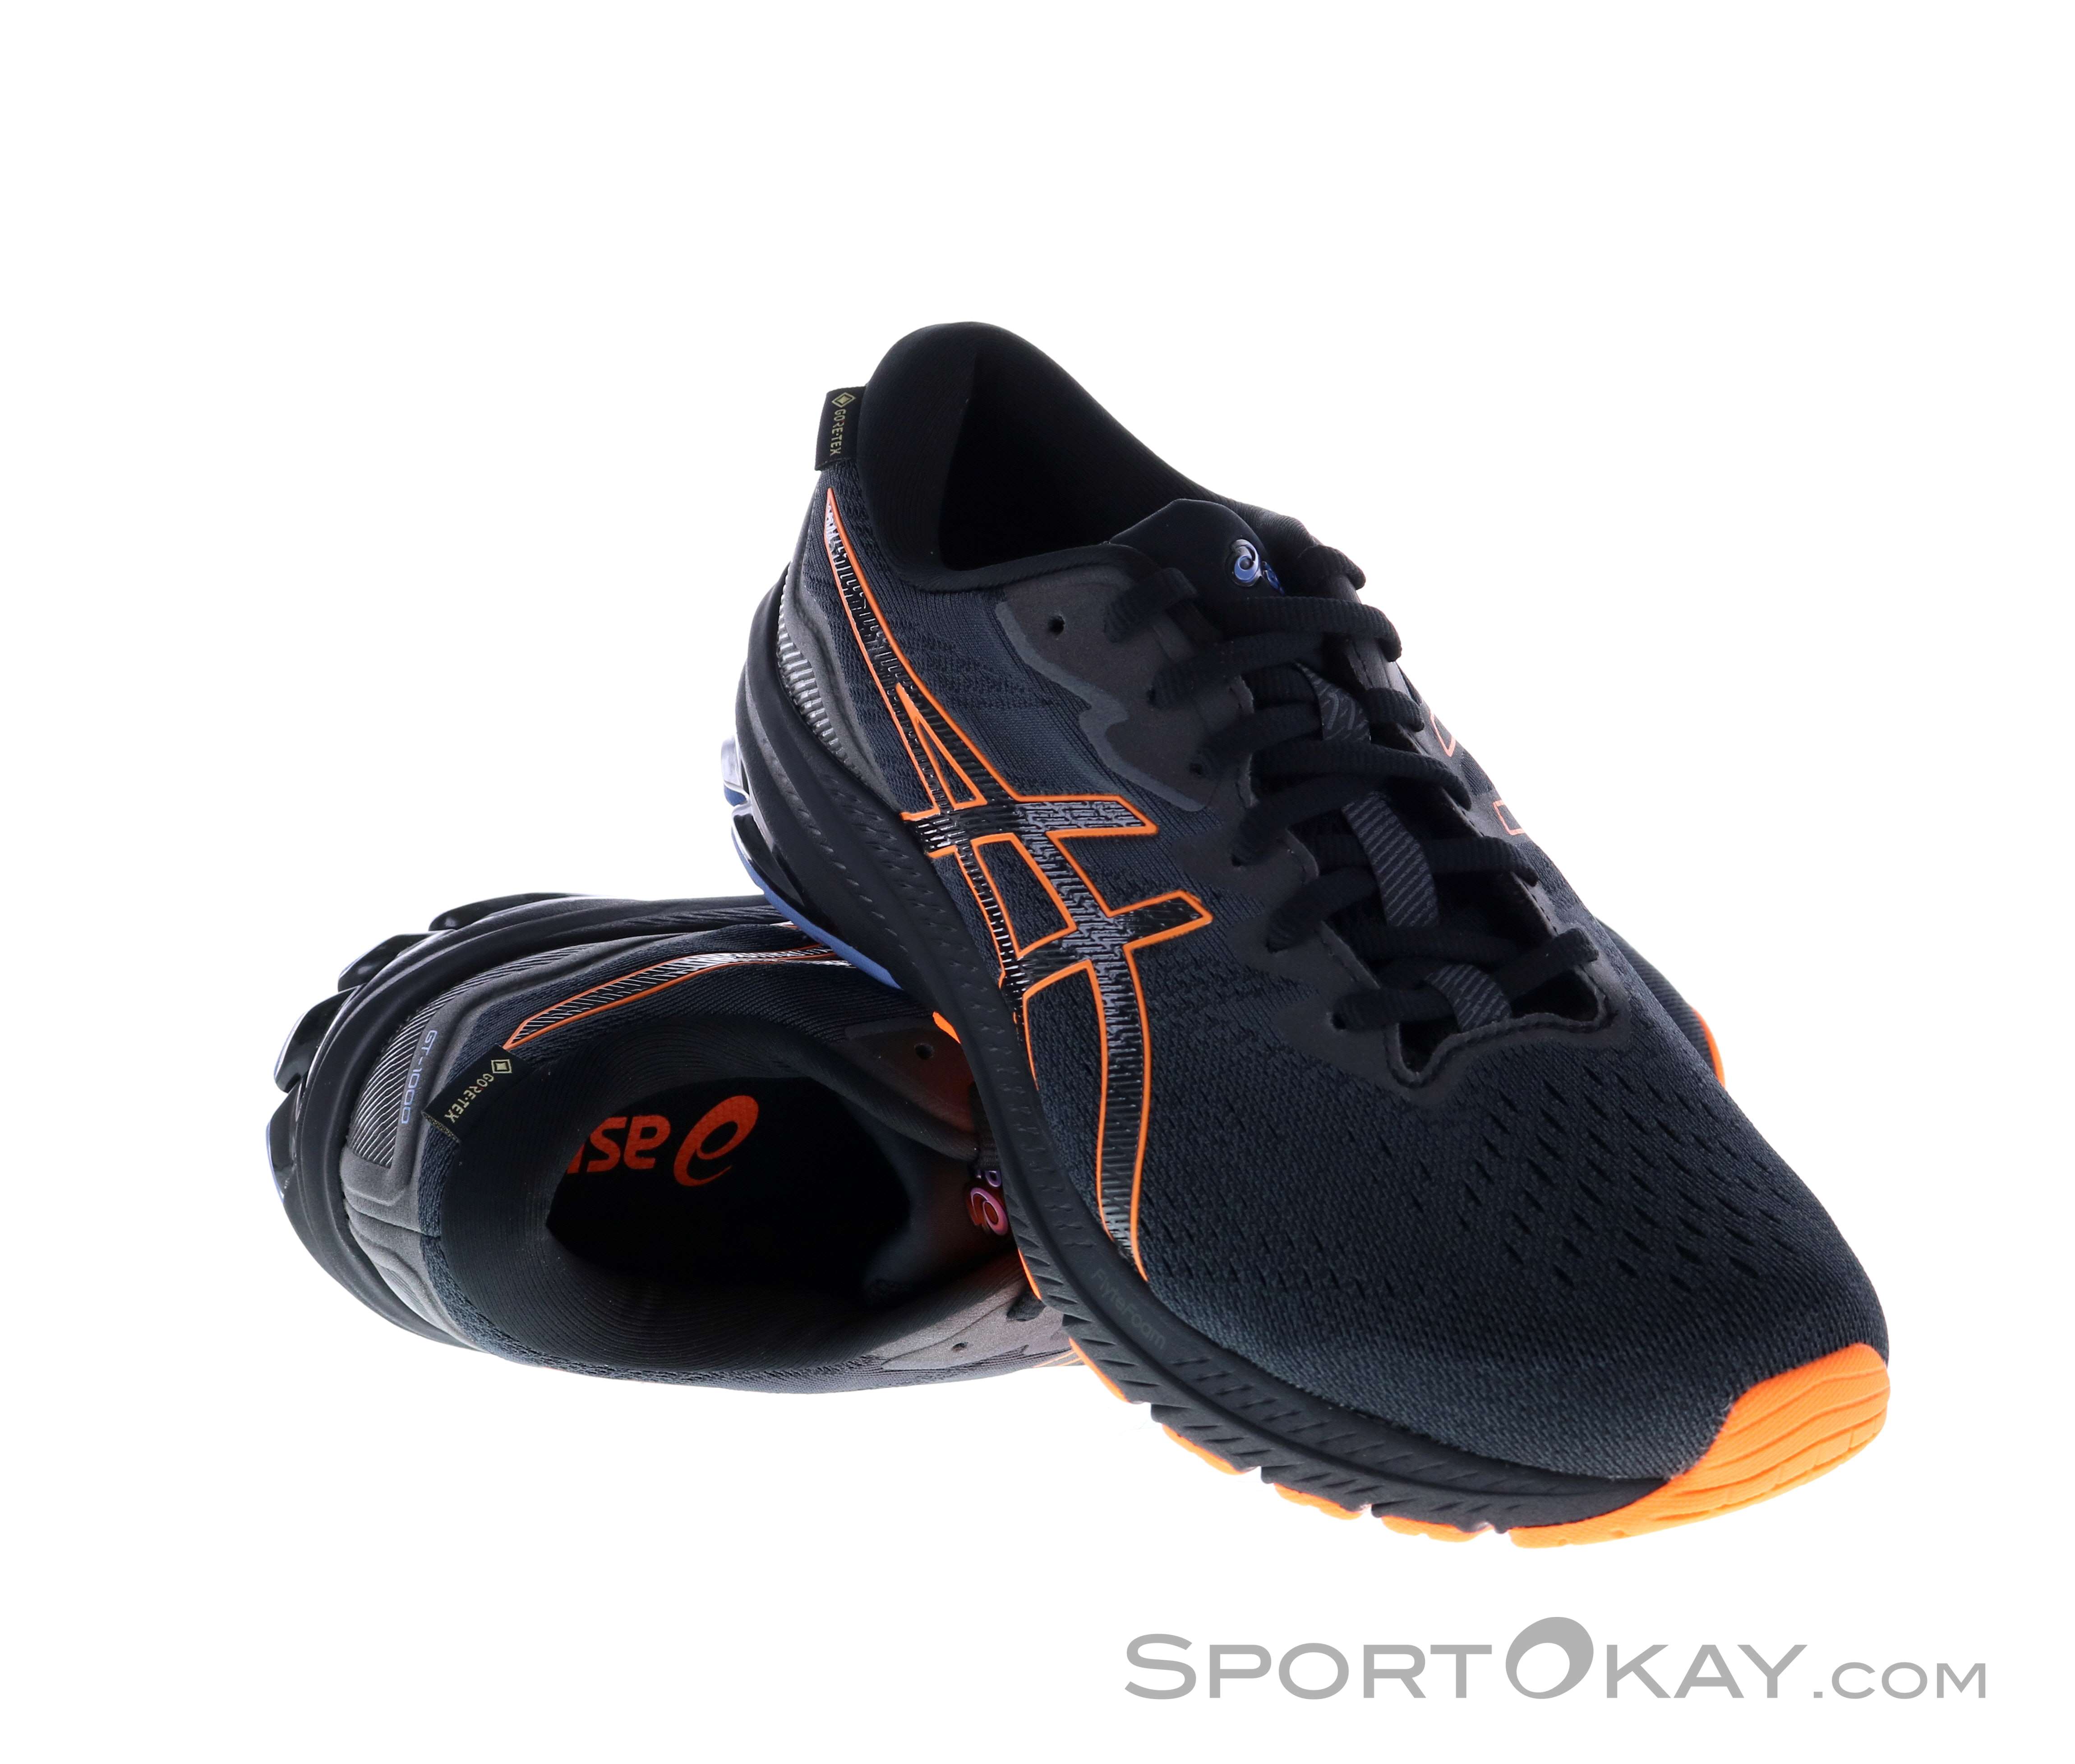 Asics GT-1000 11 GTX Mens Running Shoes Gore-Tex - All-Round Running Shoes - Running Shoes - Running All